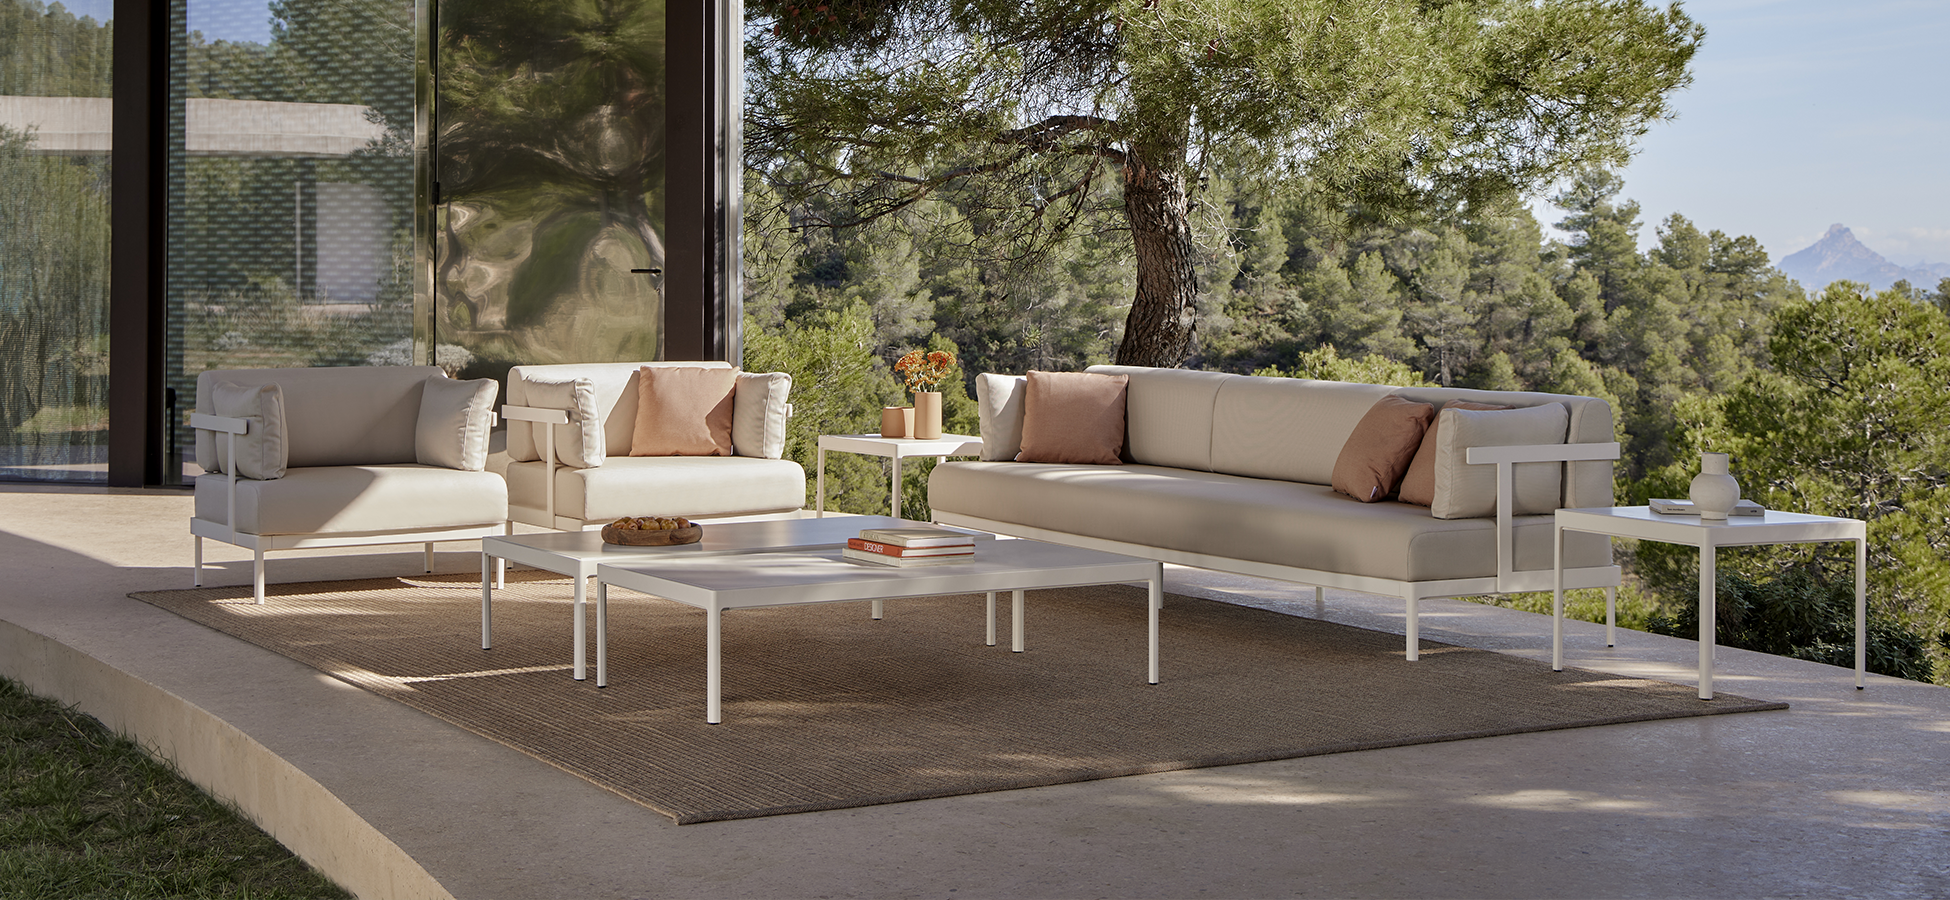 Legacy Outdoor Furniture Collection, exterior sofa, exterior chair, outdoor design, project, outdoor table, patio, garden